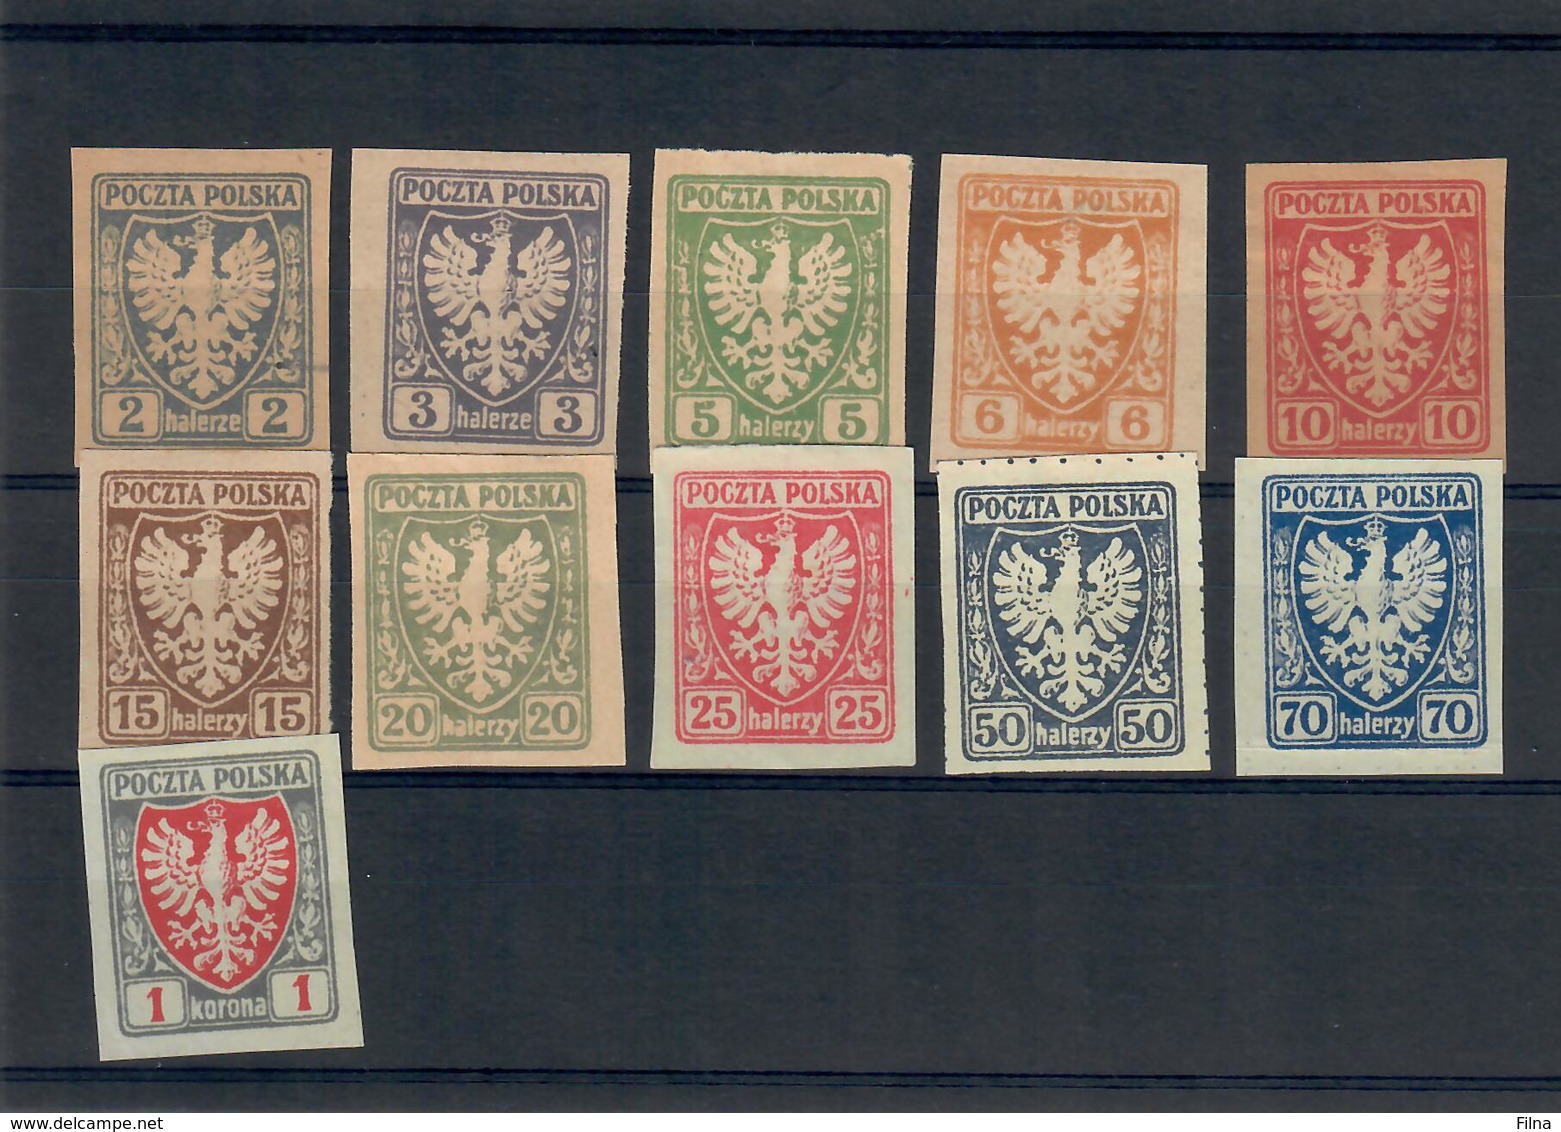 POLONIA 1919 - STEMMA CON AQUILA EMISSIONI PER LA GALIZIA -  NUOVI - Unused Stamps